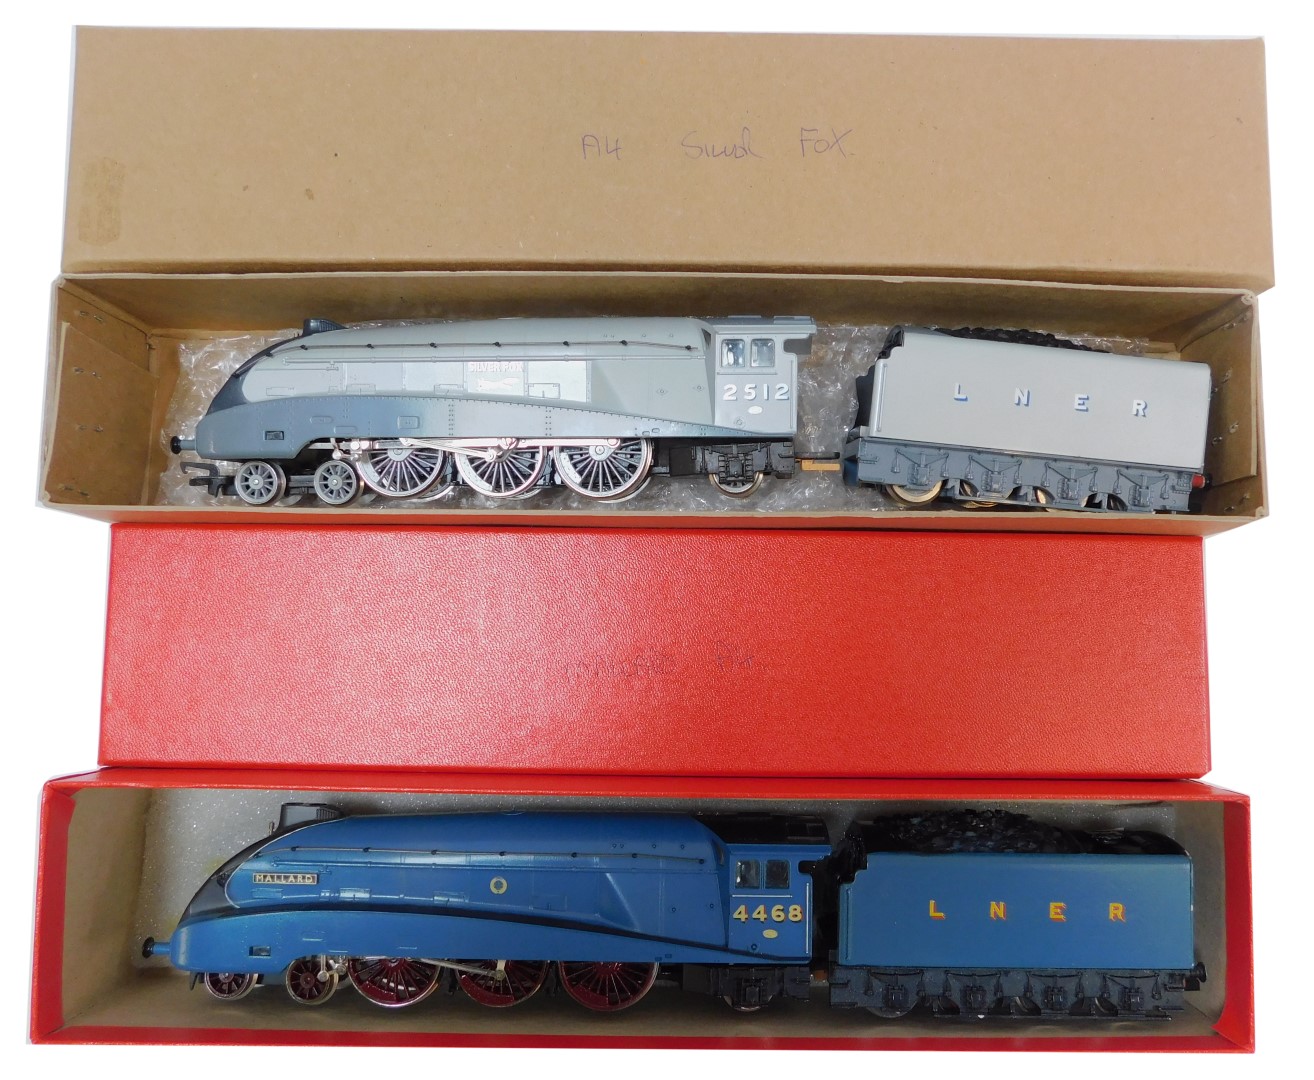 Hornby OO gauge Class A4 locomotives, comprising 4468 Mallard, LNER Garter Blue, and Silver Fox, 251